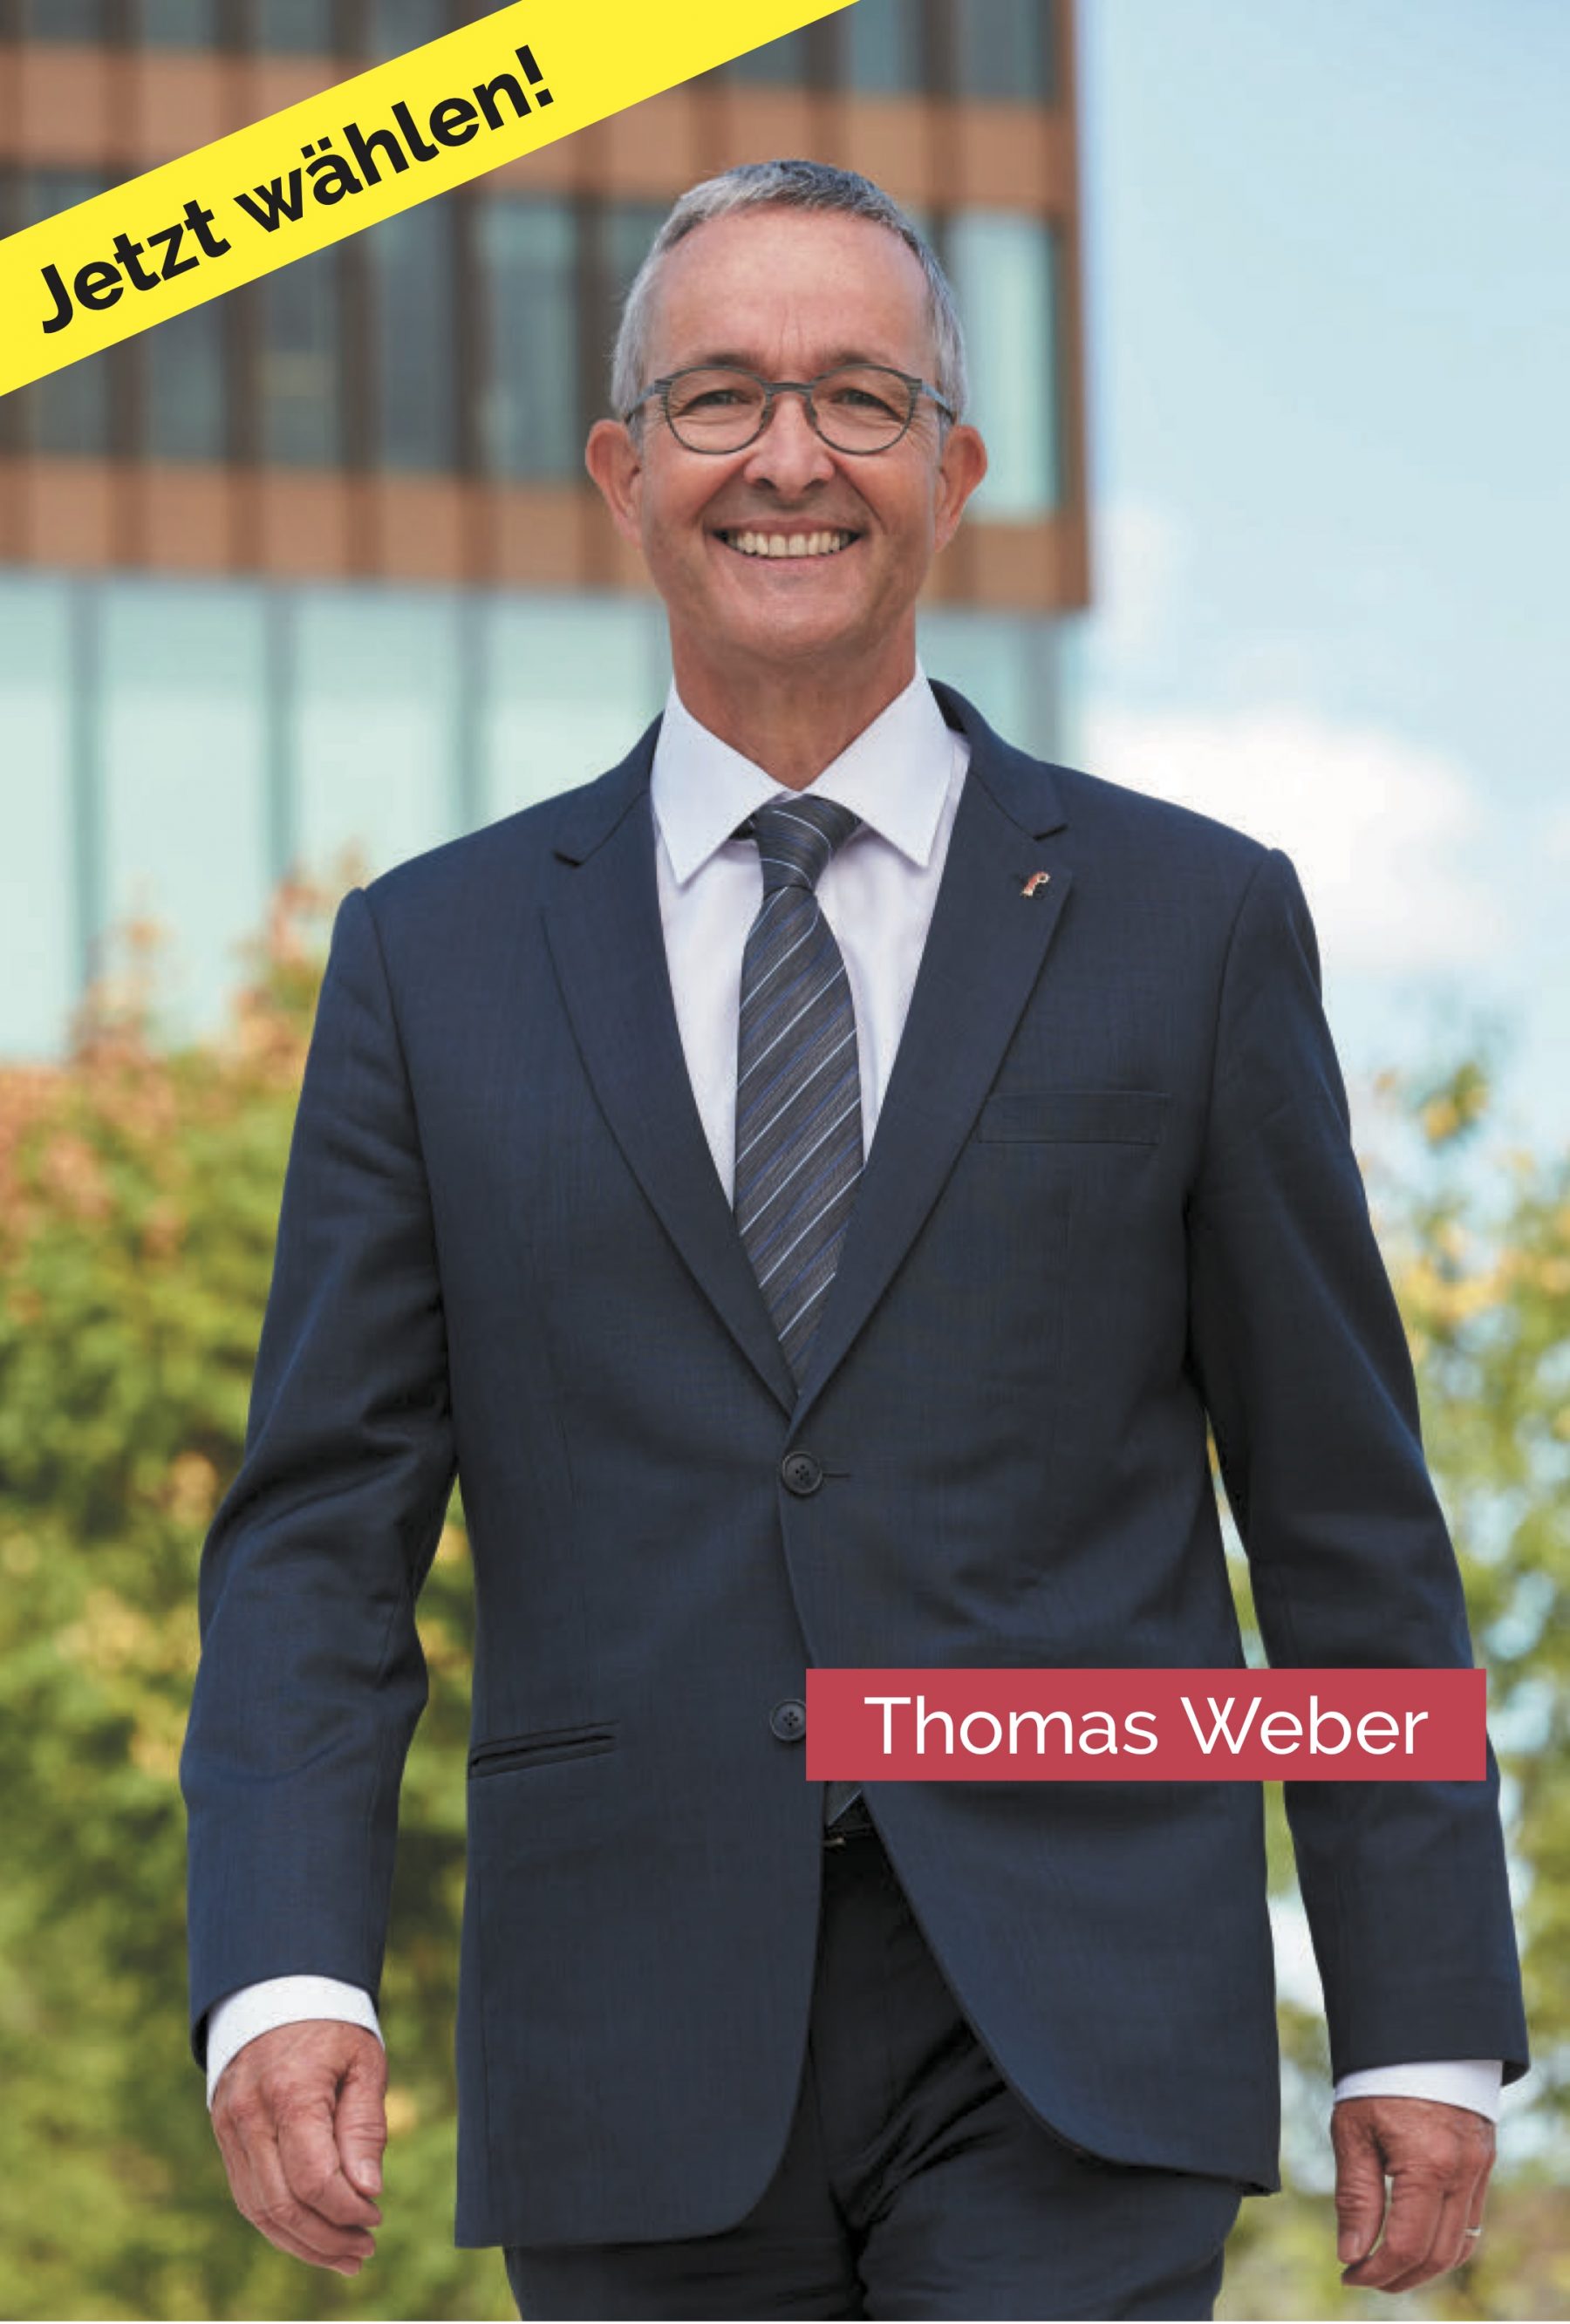 Thomas Weber, Info-Flash: Interview mit Regierungsrat Thomas Weber – Jetzt wählen!